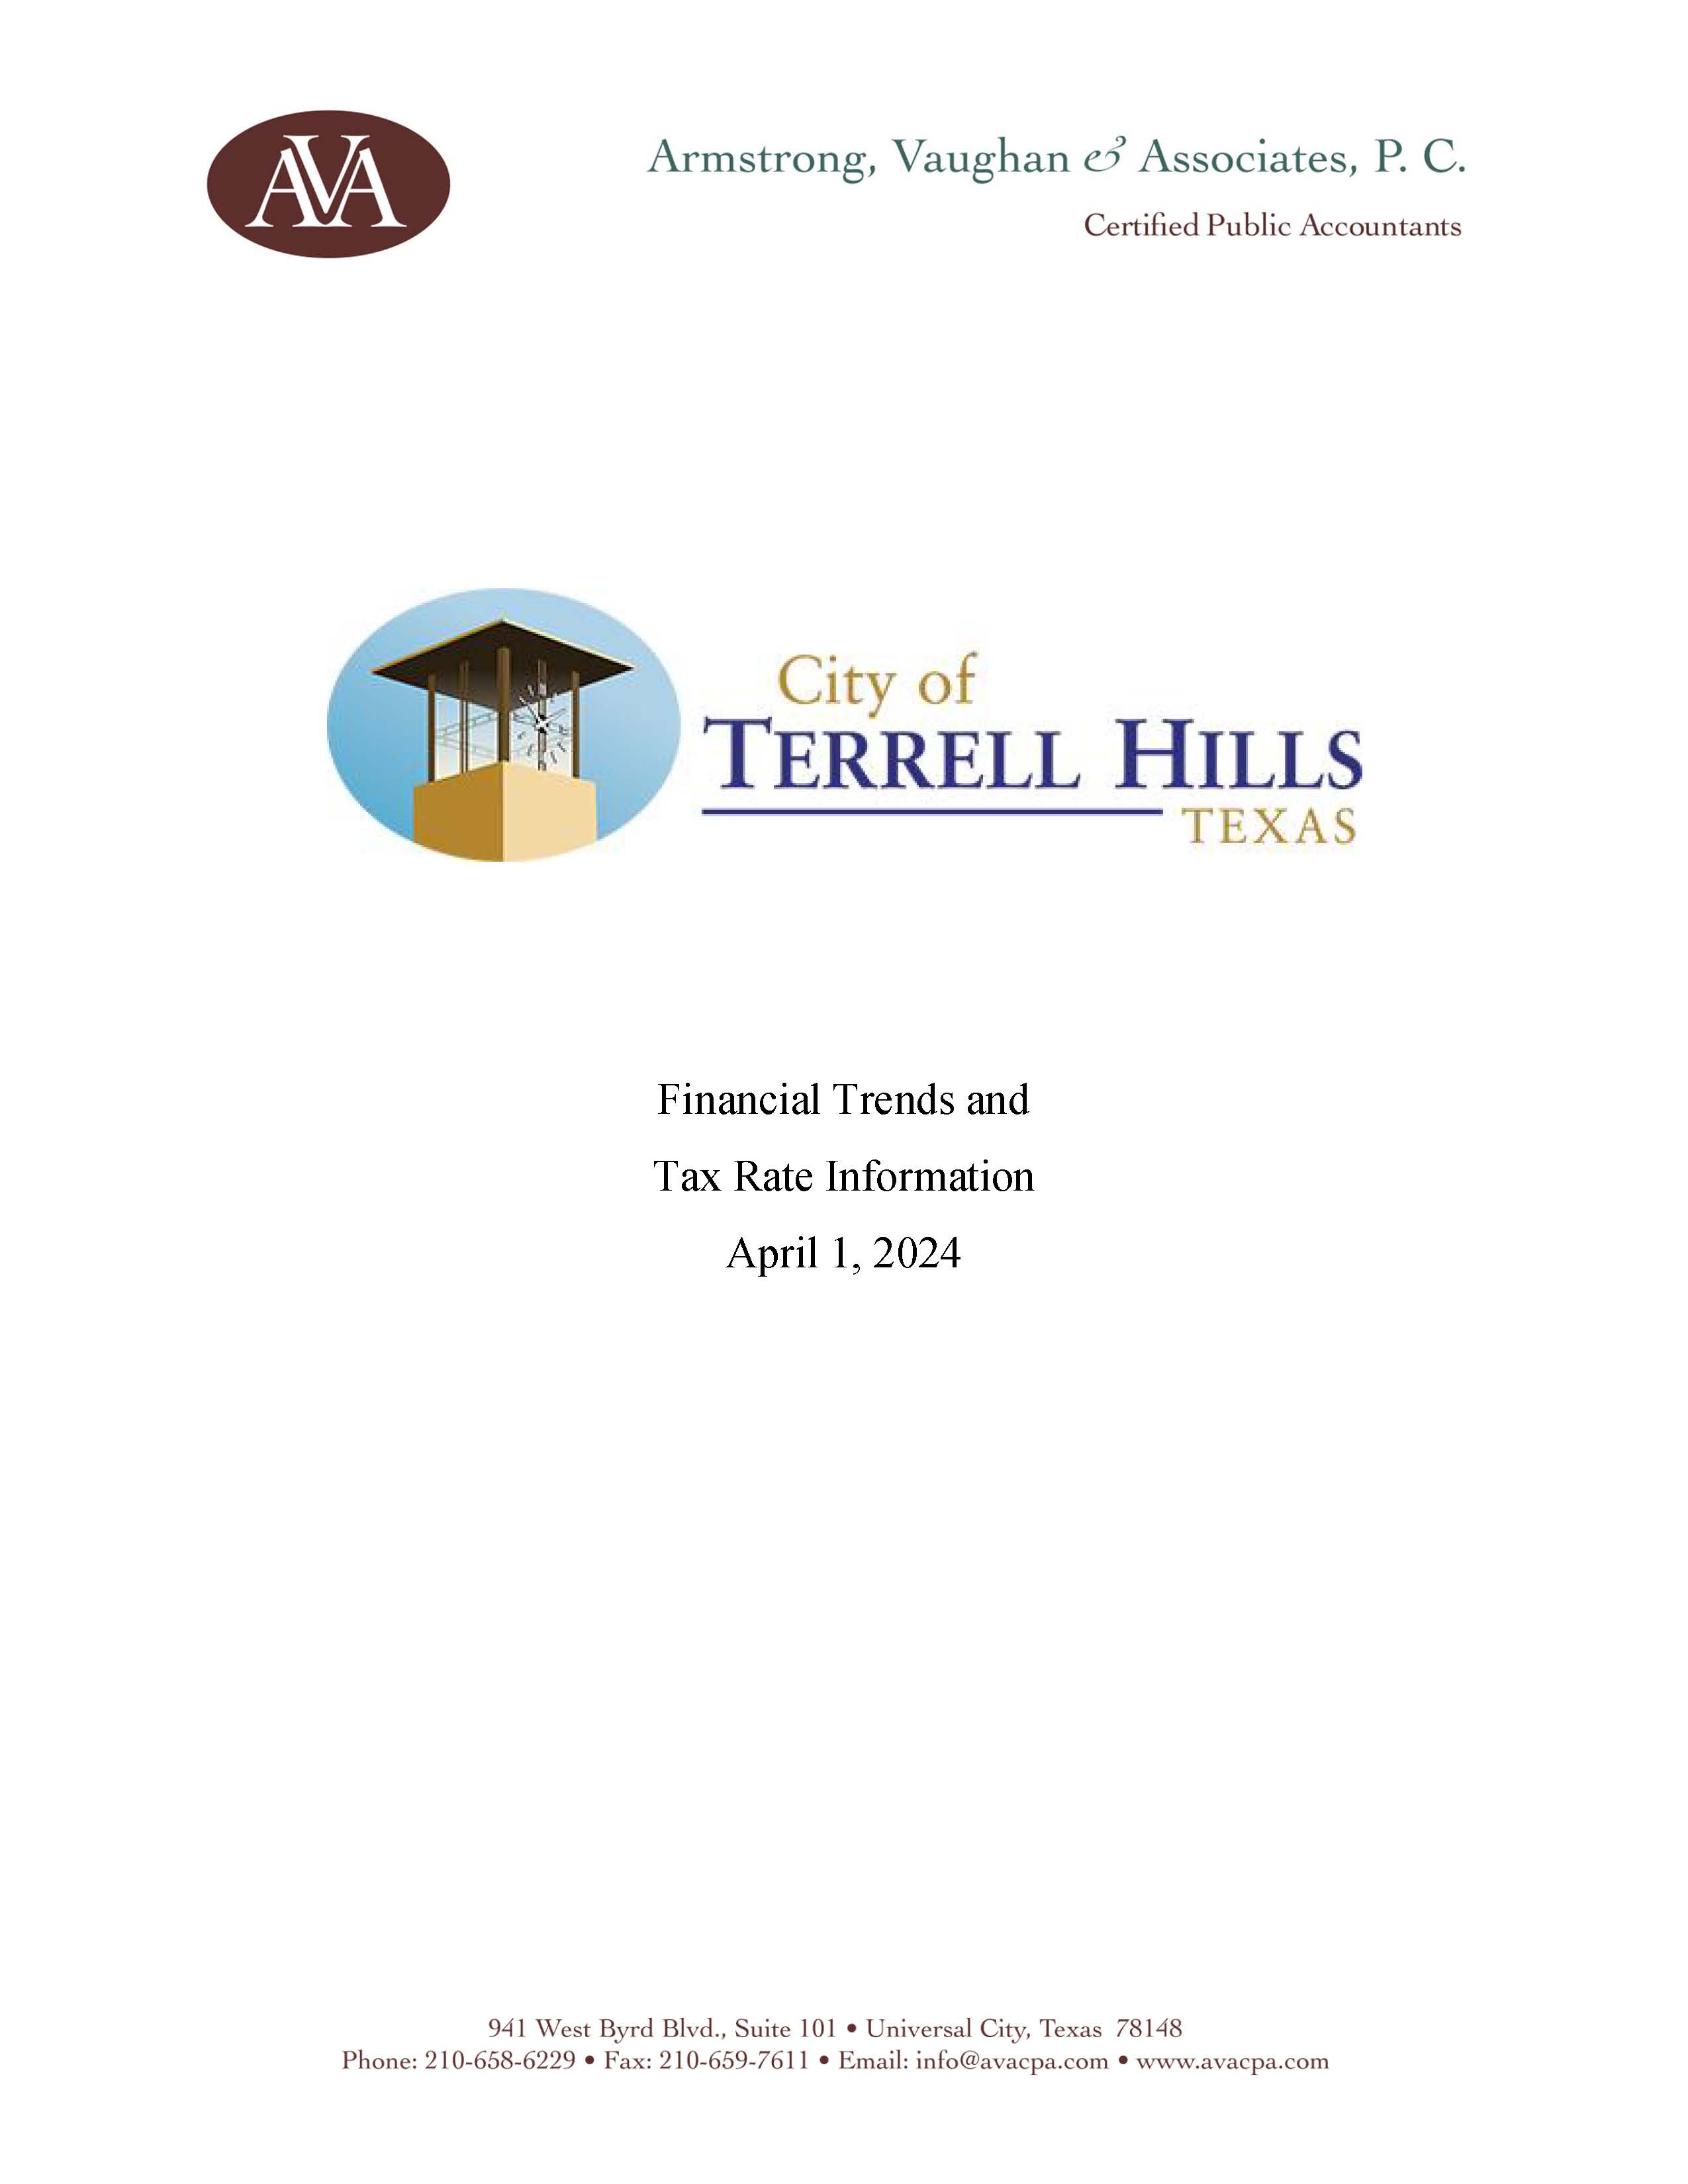 Terrell Hills Tax Freeze InformationAVA Page 1